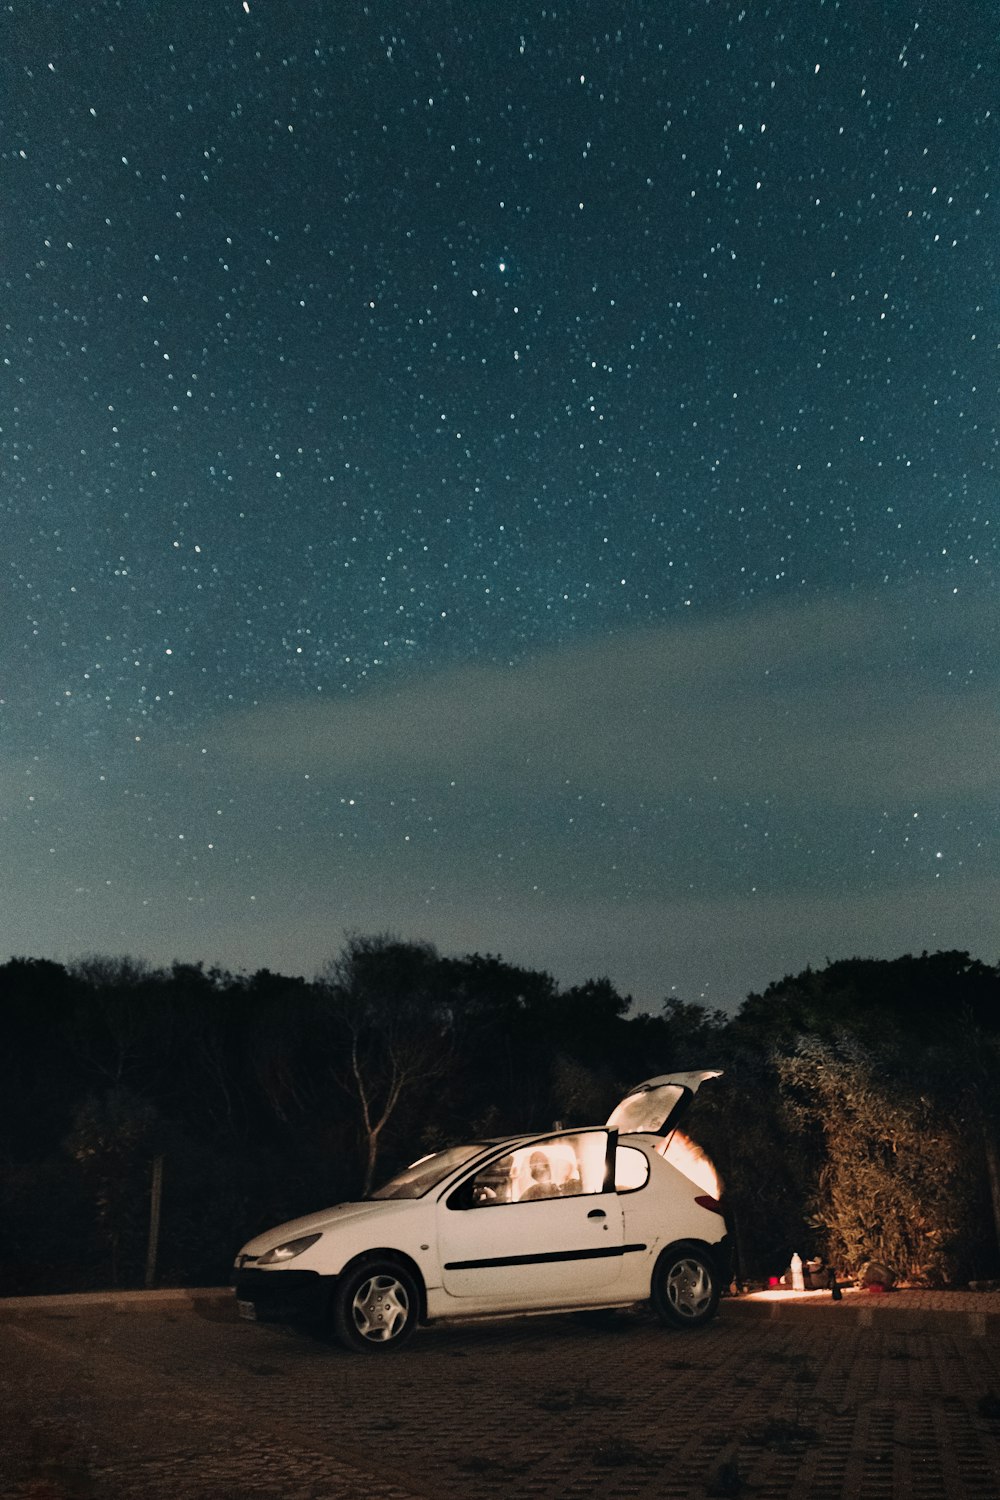 Un'auto parcheggiata su una strada con un cielo stellato sopra foto –  Algarve Immagine gratuita su Unsplash